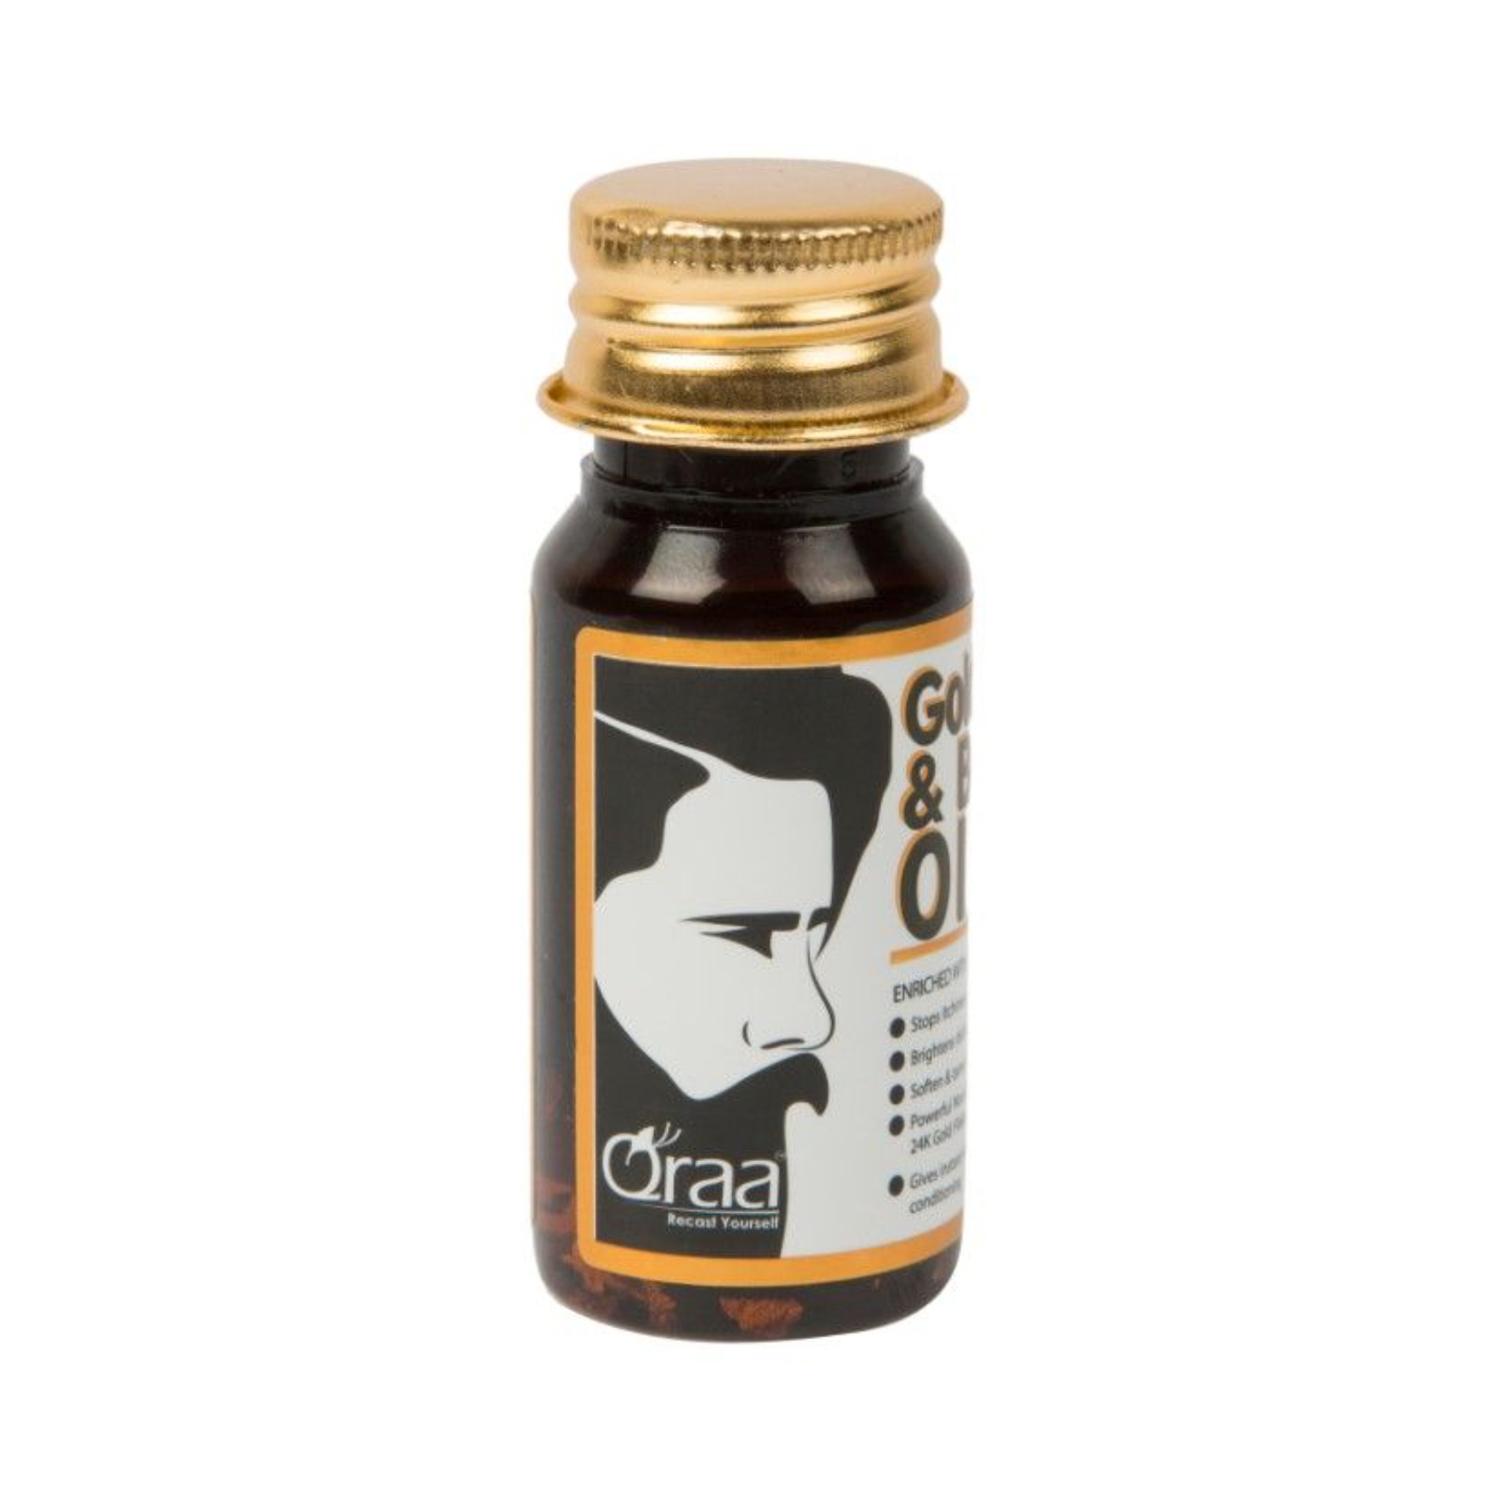 Qraamen Luxurious Gold Face and Beard Oil (30 ml)